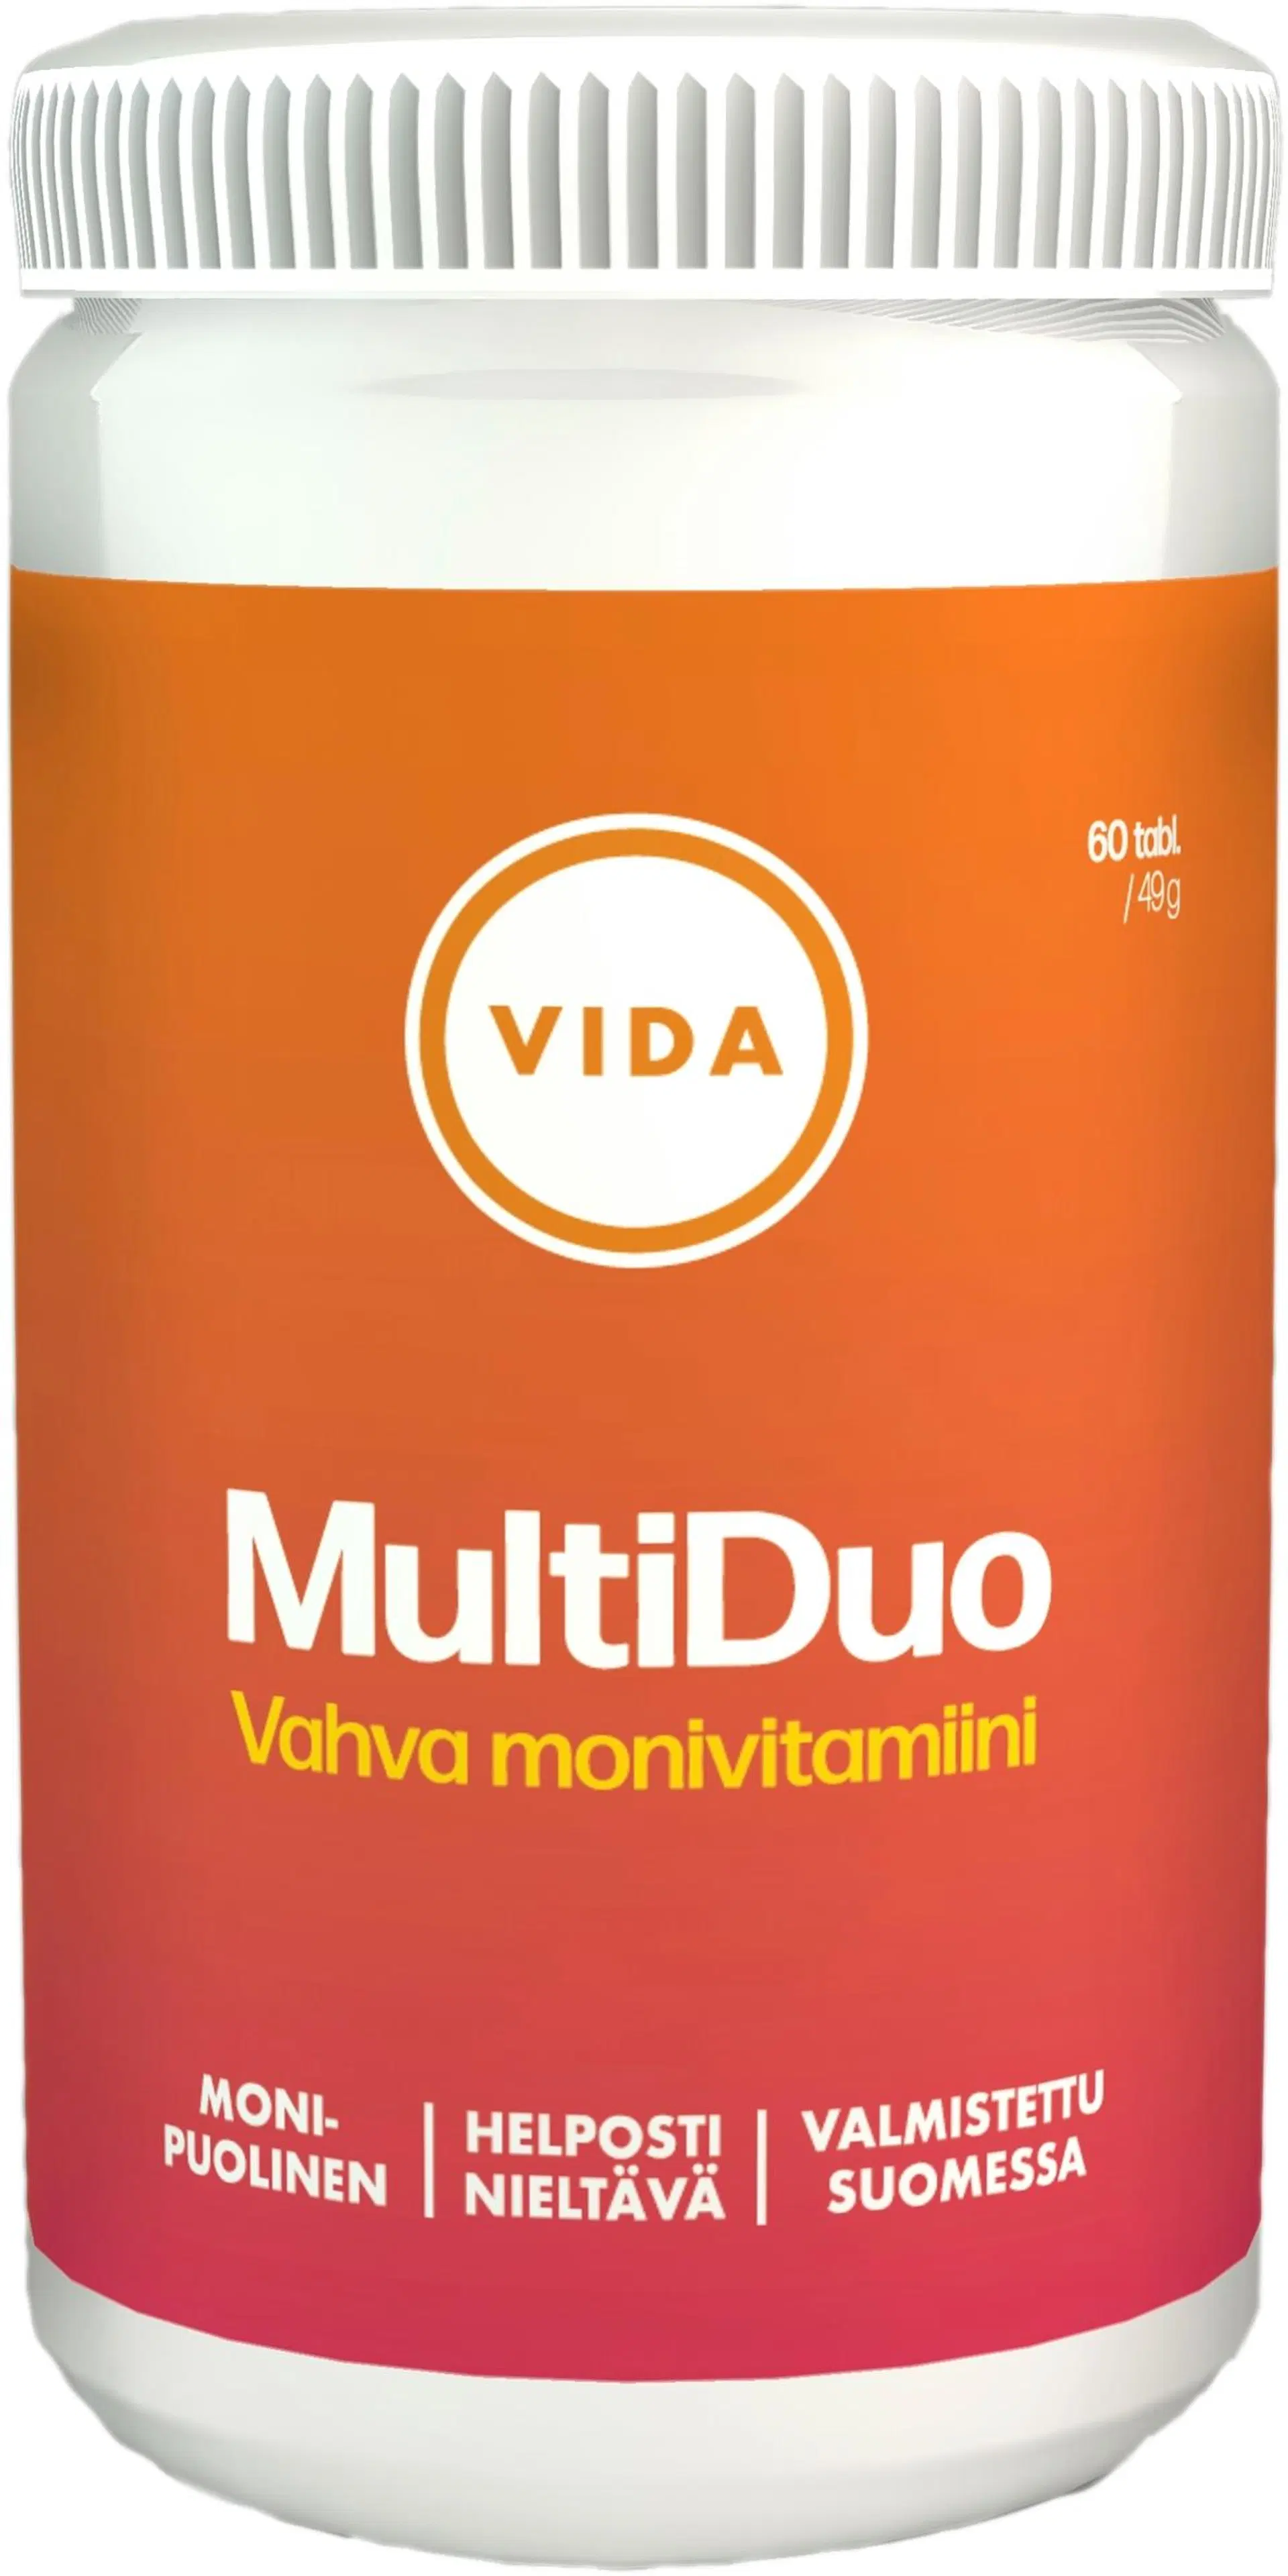 Vida ravintolisävalmiste Multiduo vahva monivitamiini 60 tablettia / 49 g